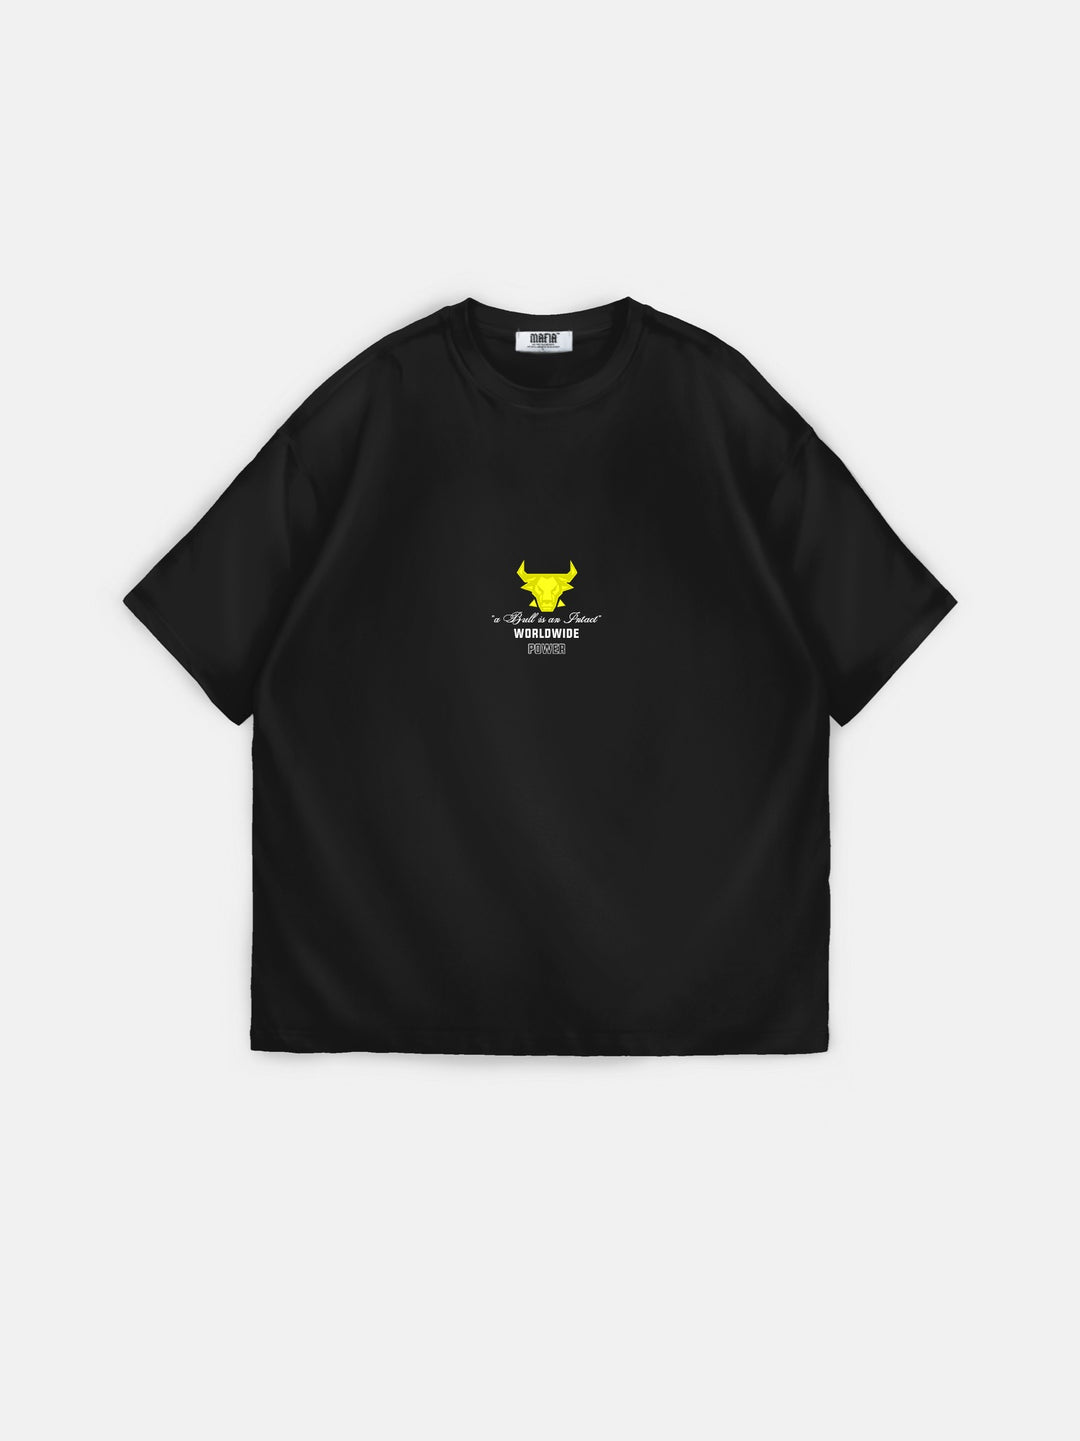 Oversize Bull Worldwide T-shirt - Black and Yellow